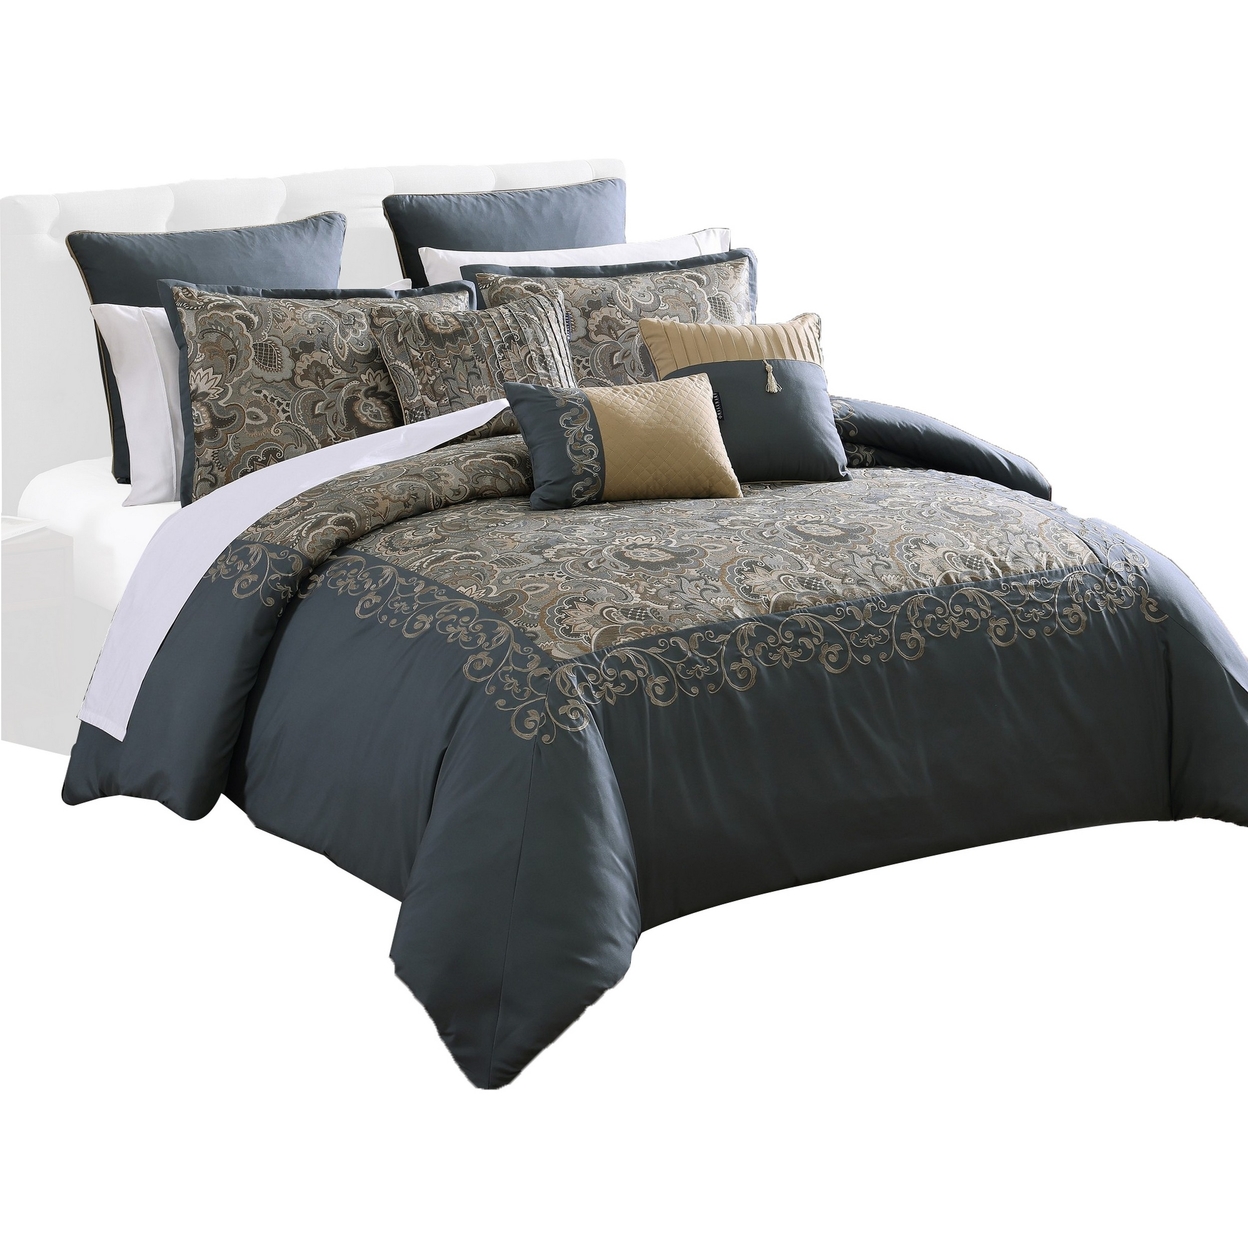 Zoe 10 Piece King Size Comforter Set, 3 Pillows, Bed Skirt, Blue, Gold - Saltoro Sherpi